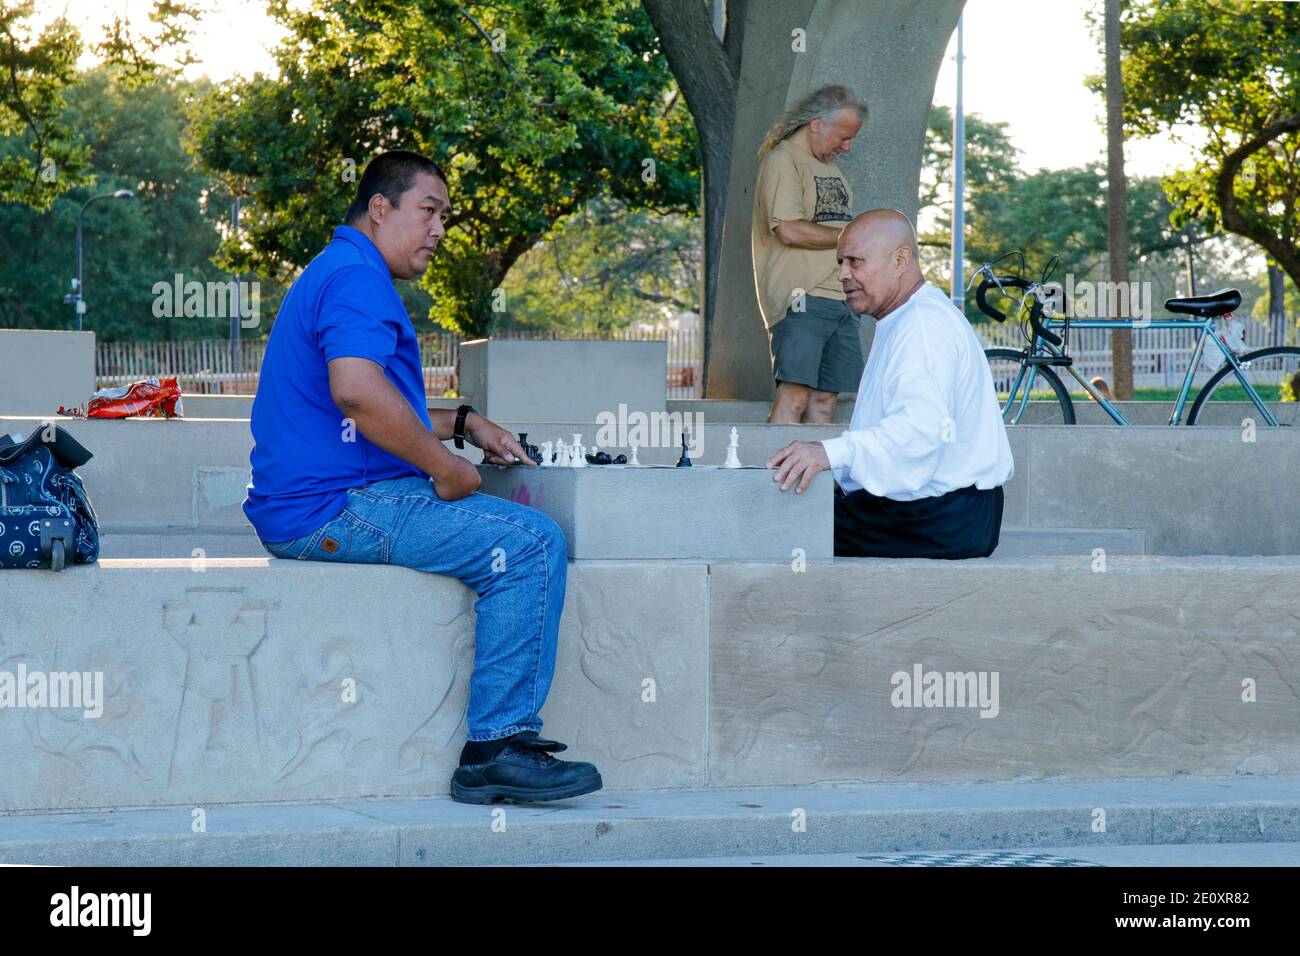 Une partie d'échecs approche sa conclusion au pavillon d'échecs sur le bord du lac de Chicago. Banque D'Images